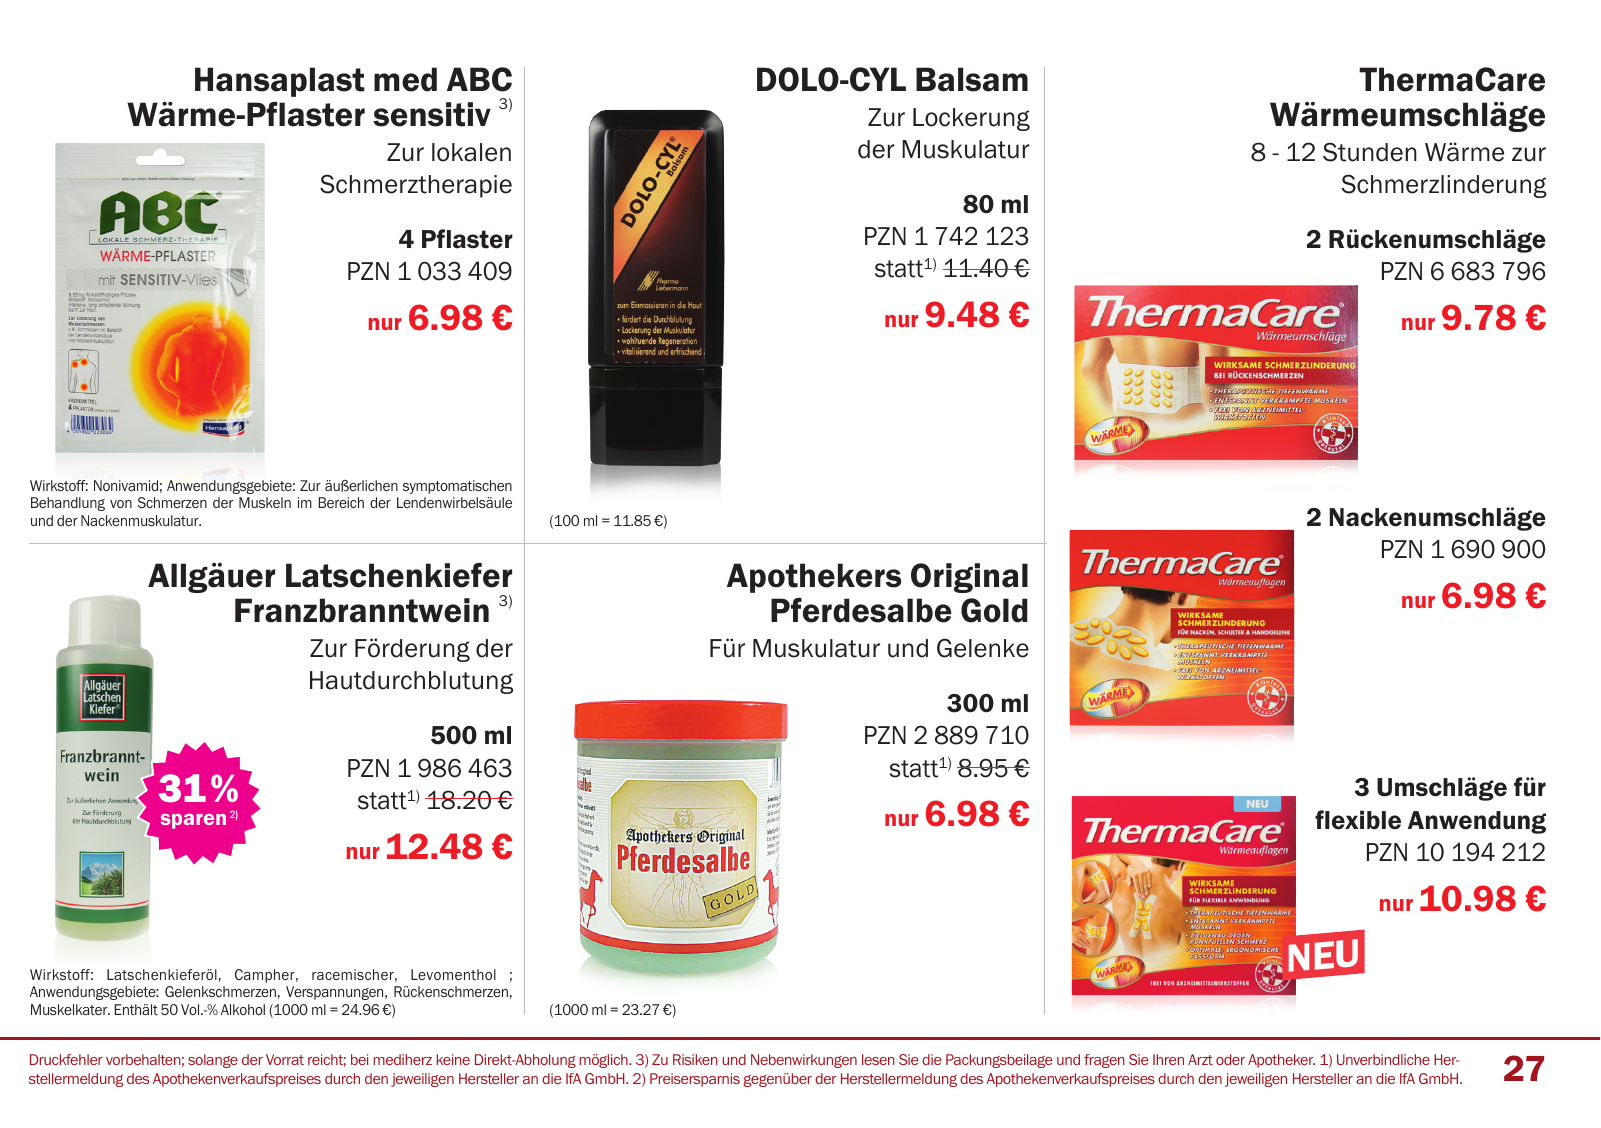 Vorschau Mediherz Katalog Herbst/Winter 2015/16 Seite 27